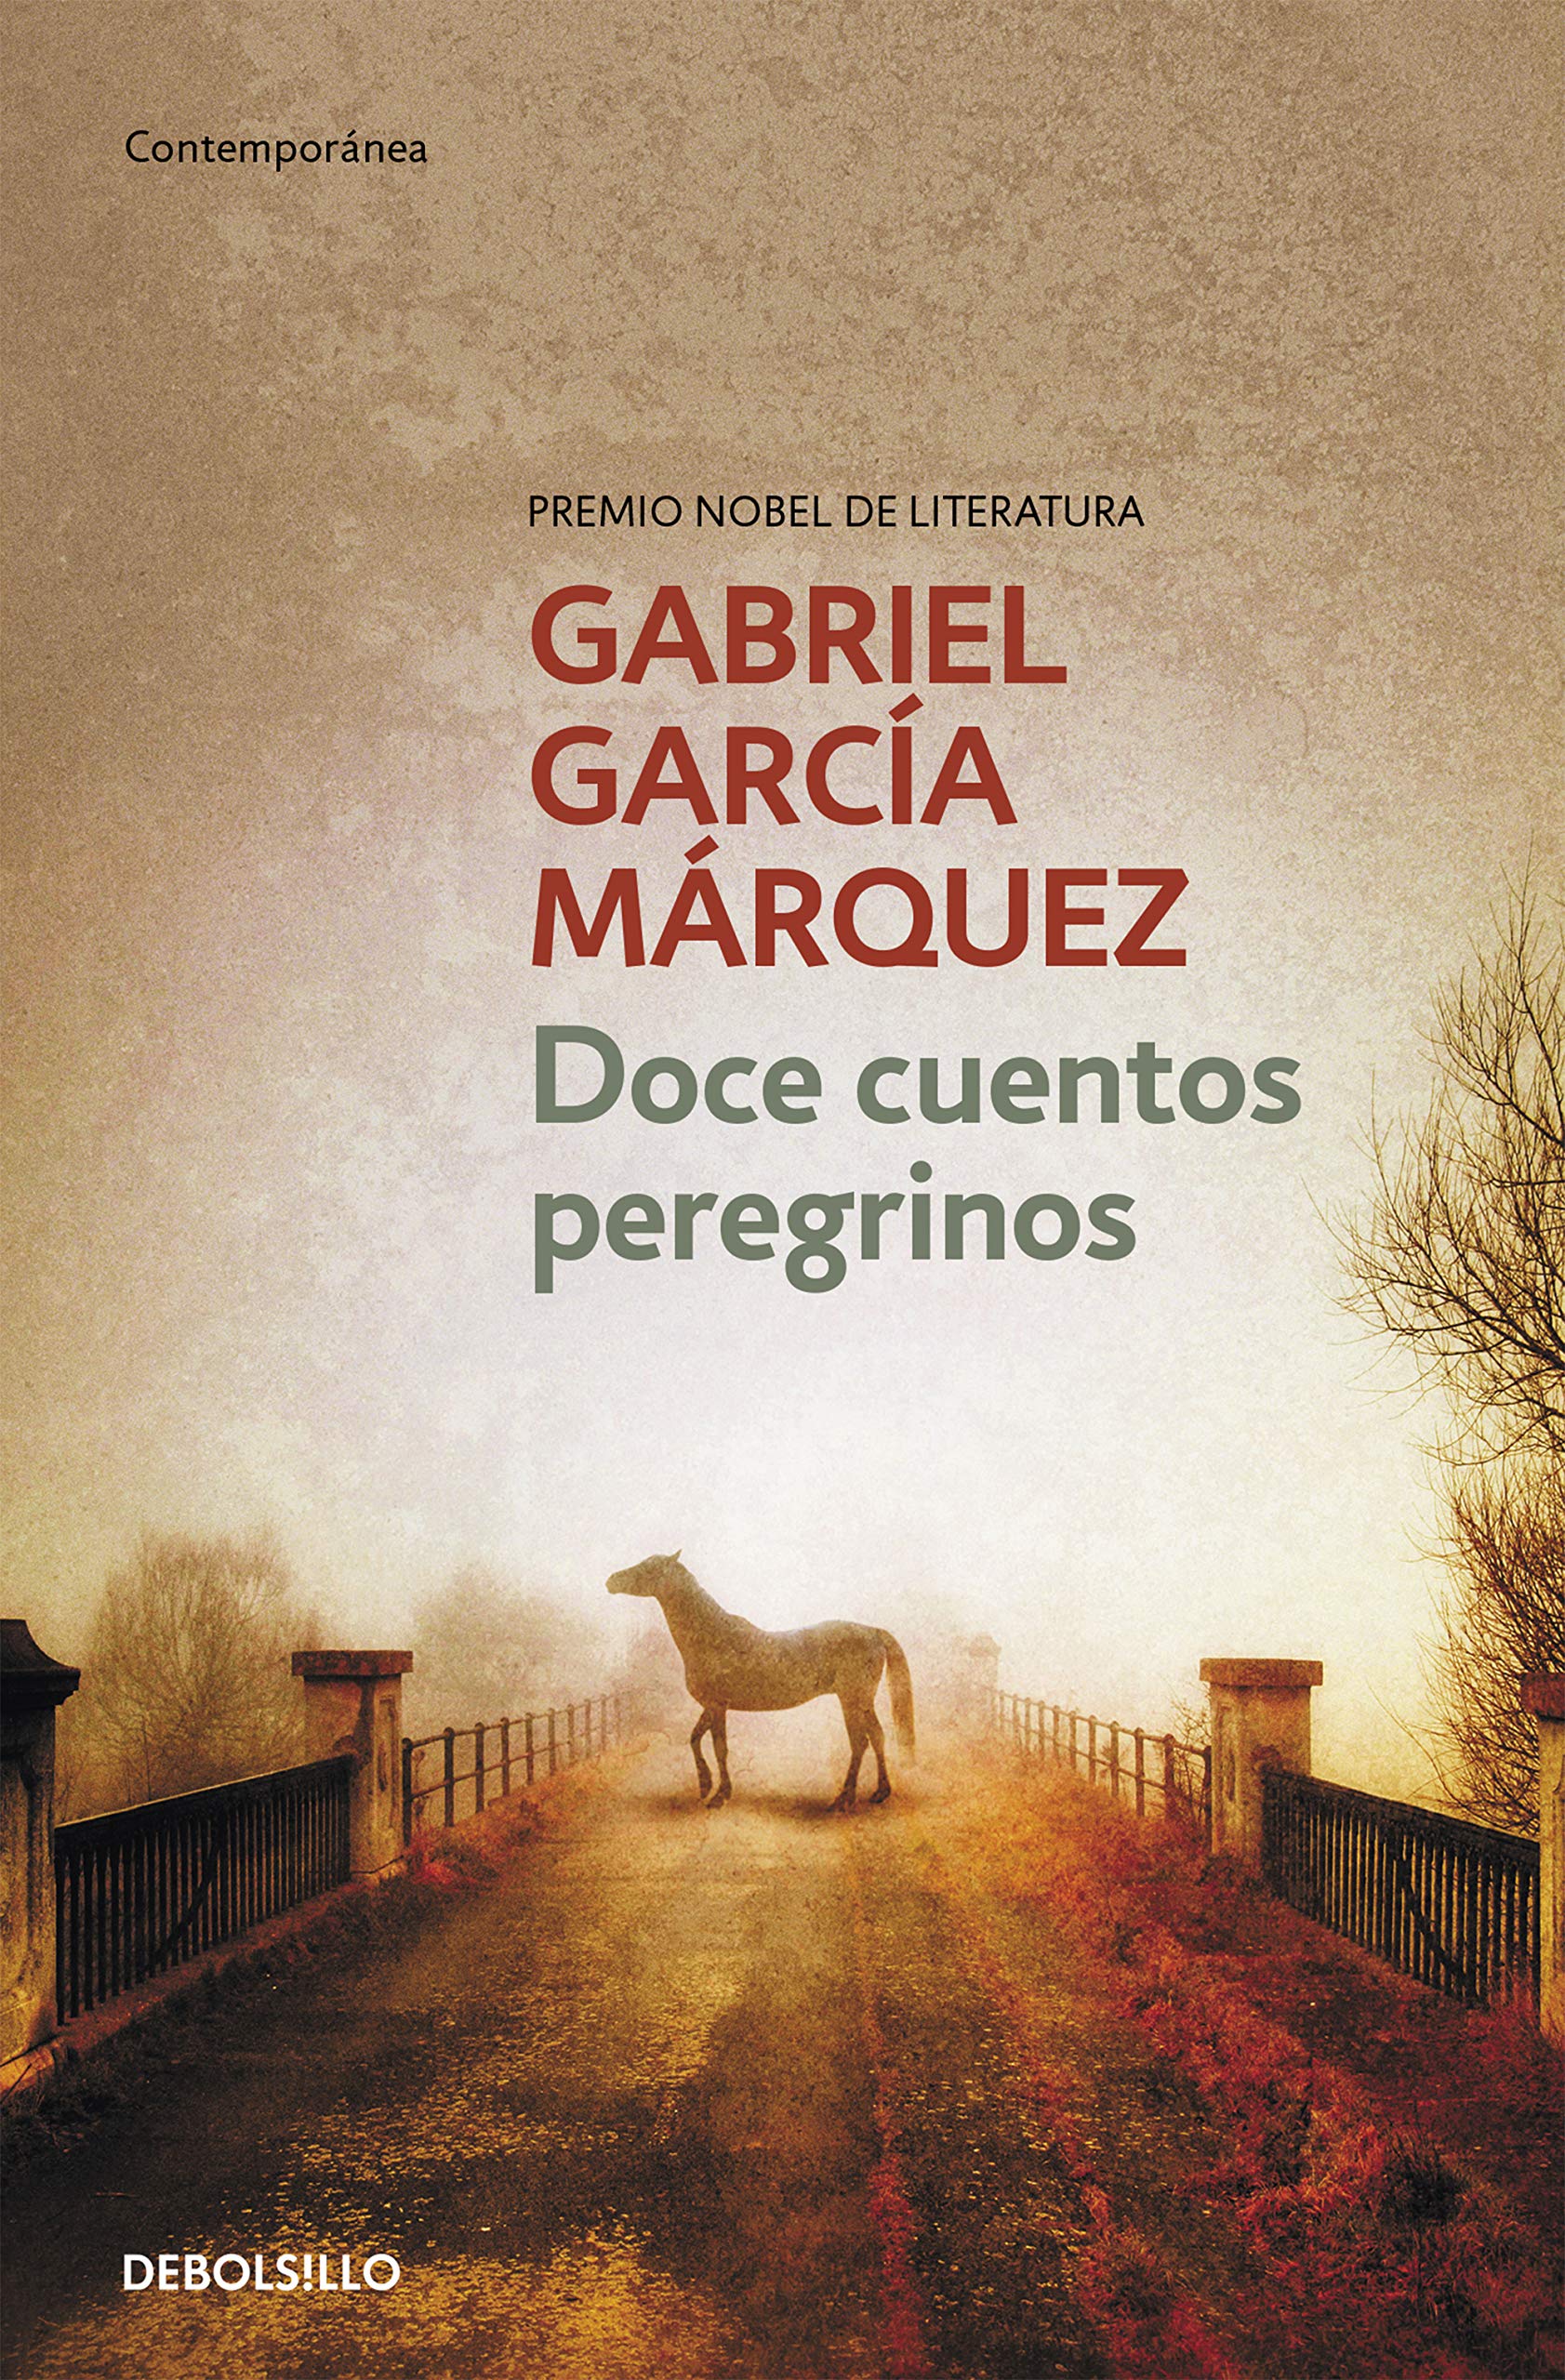 Zenda recomienda: Doce cuentos peregrinos, de Gabriel García Márquez